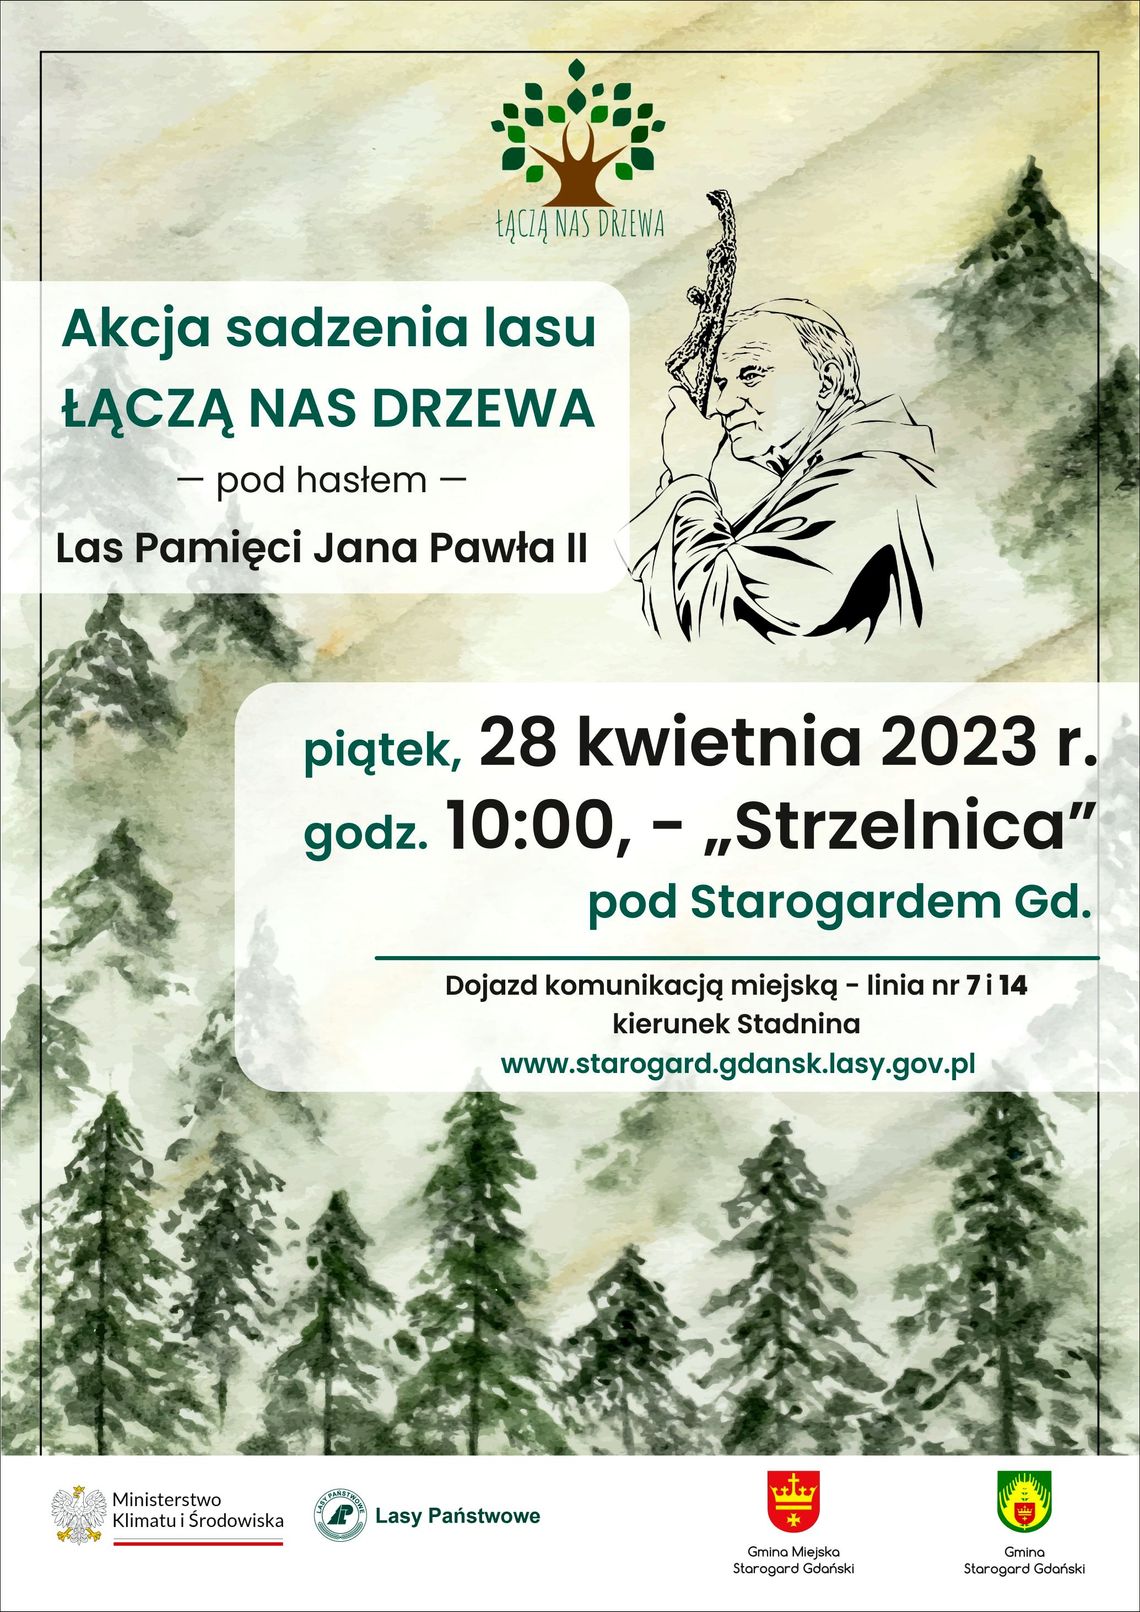 Wspólne sadzenie lasu z leśnikami ze Starogardu! Już 28 kwietnia w Strzelnicy!